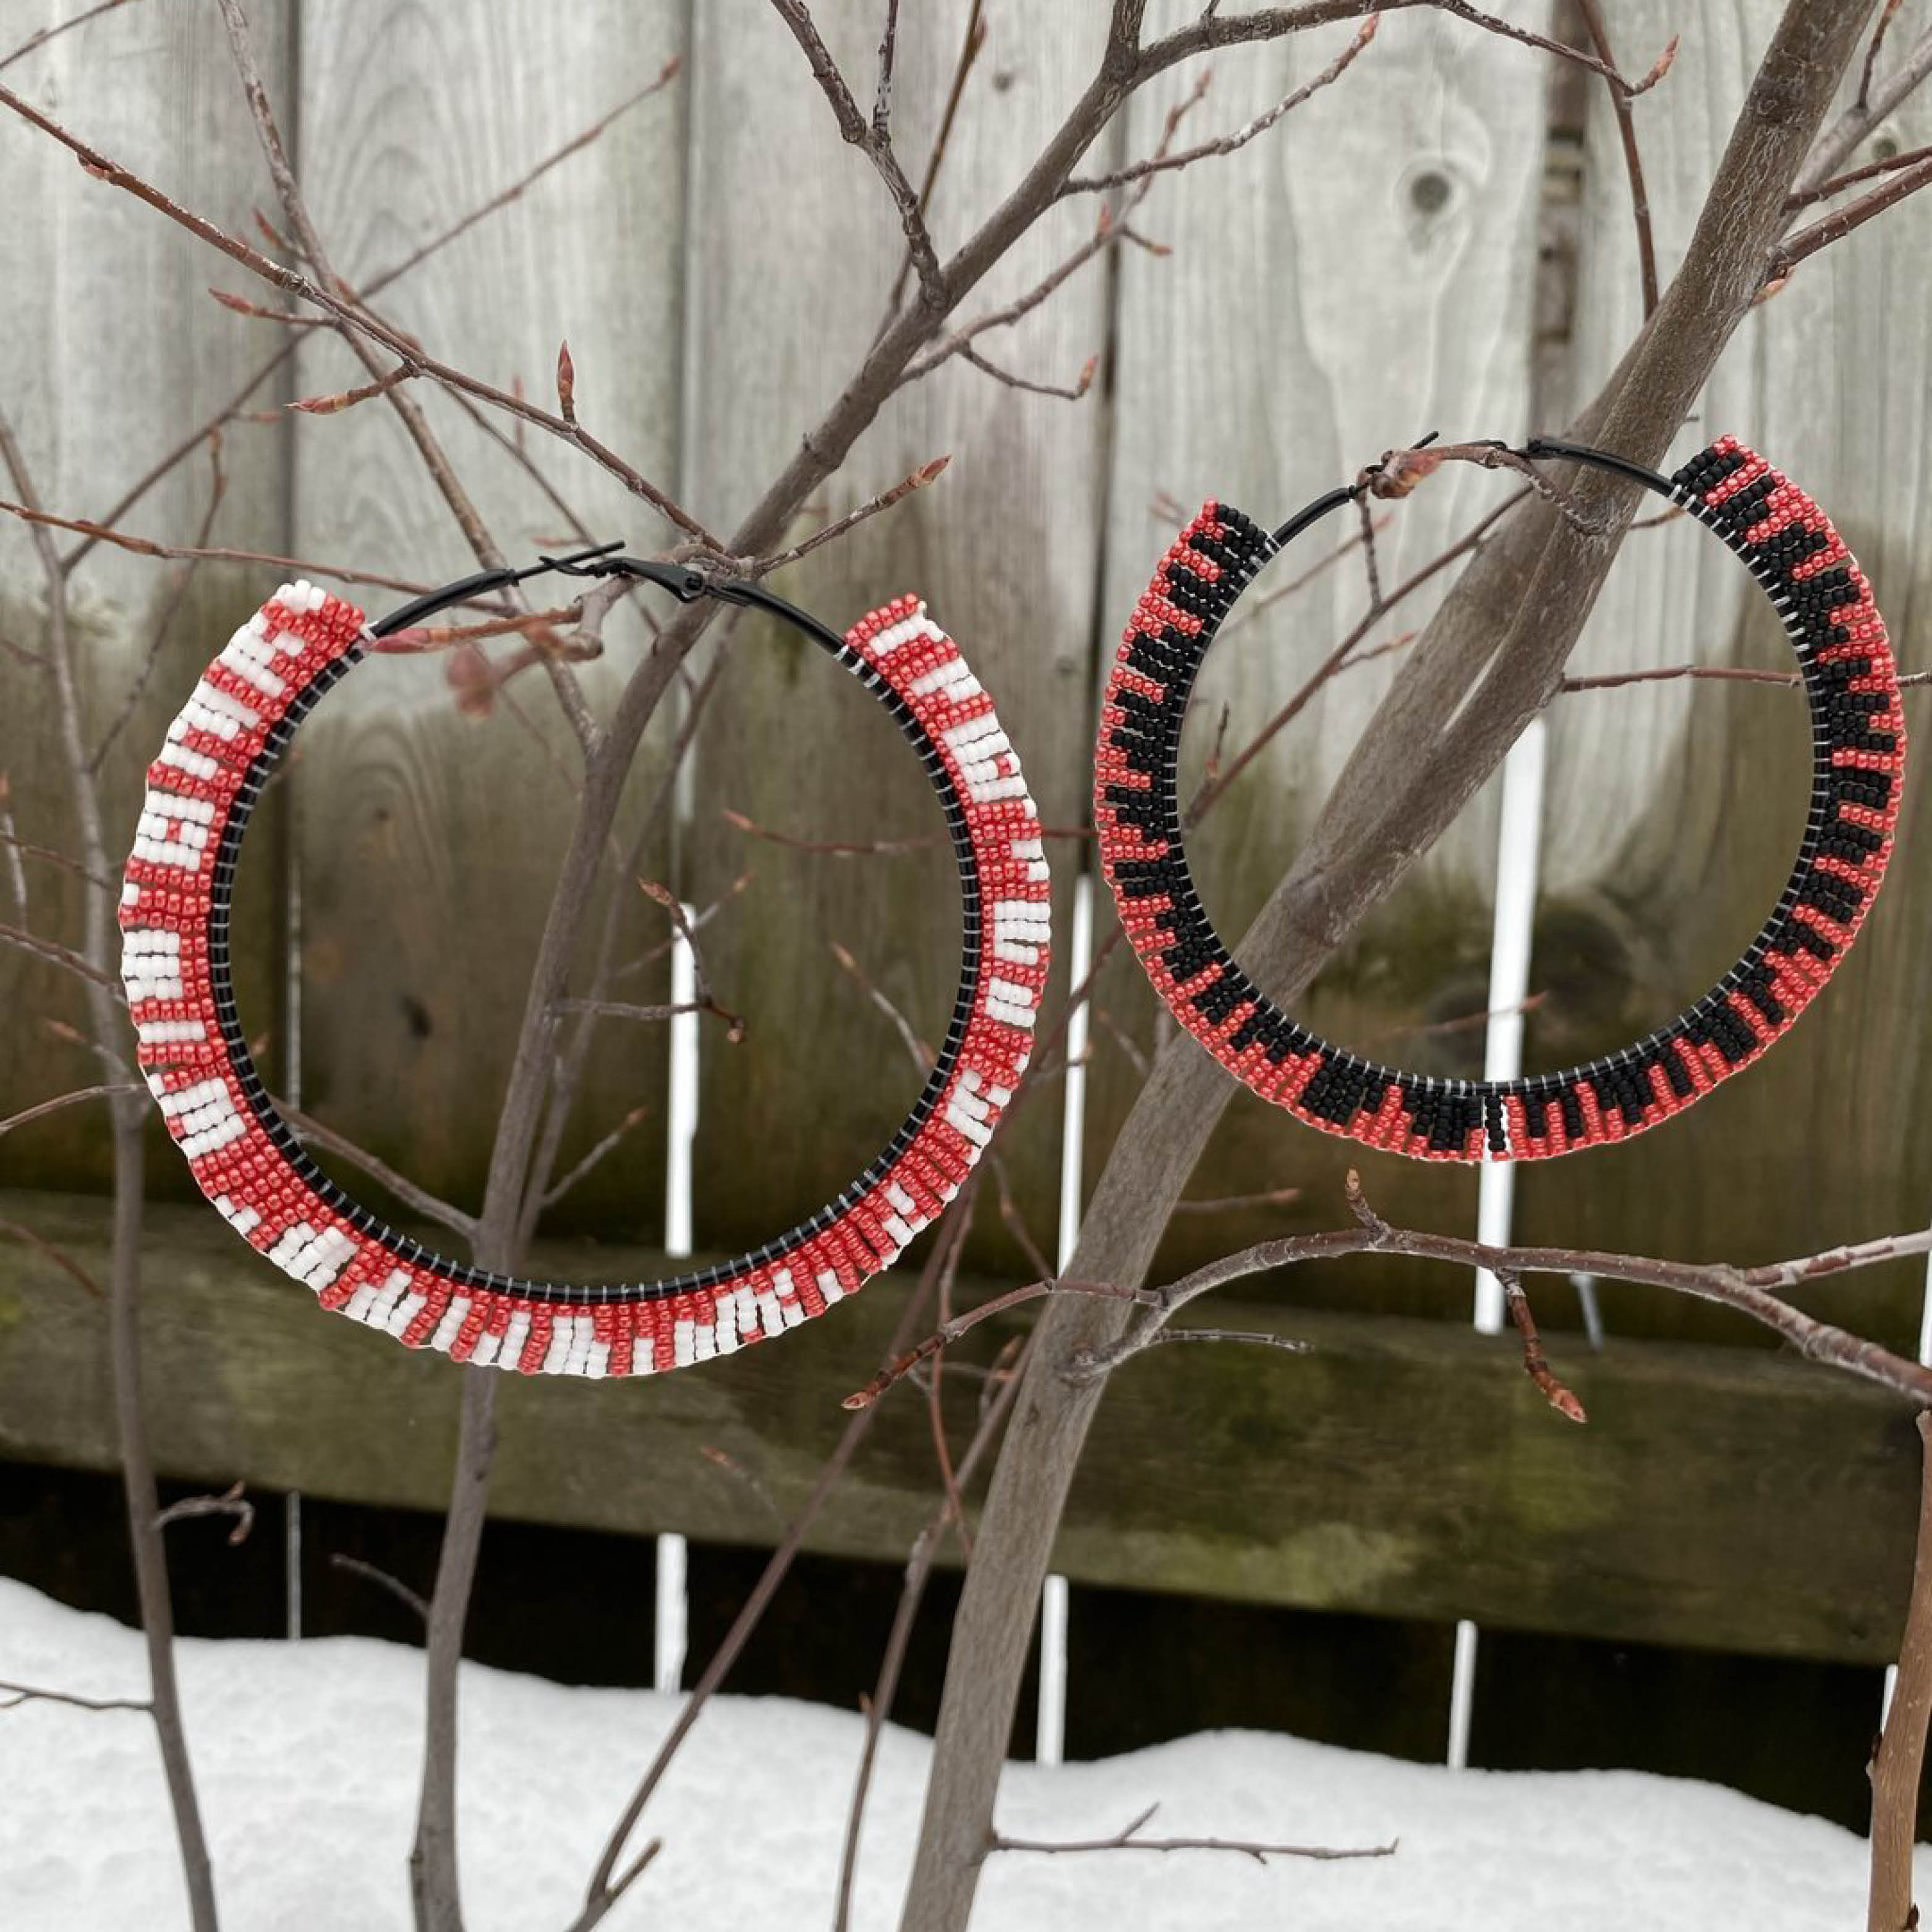 Nanaboozho’s Beads red, white and black hoop earrings.